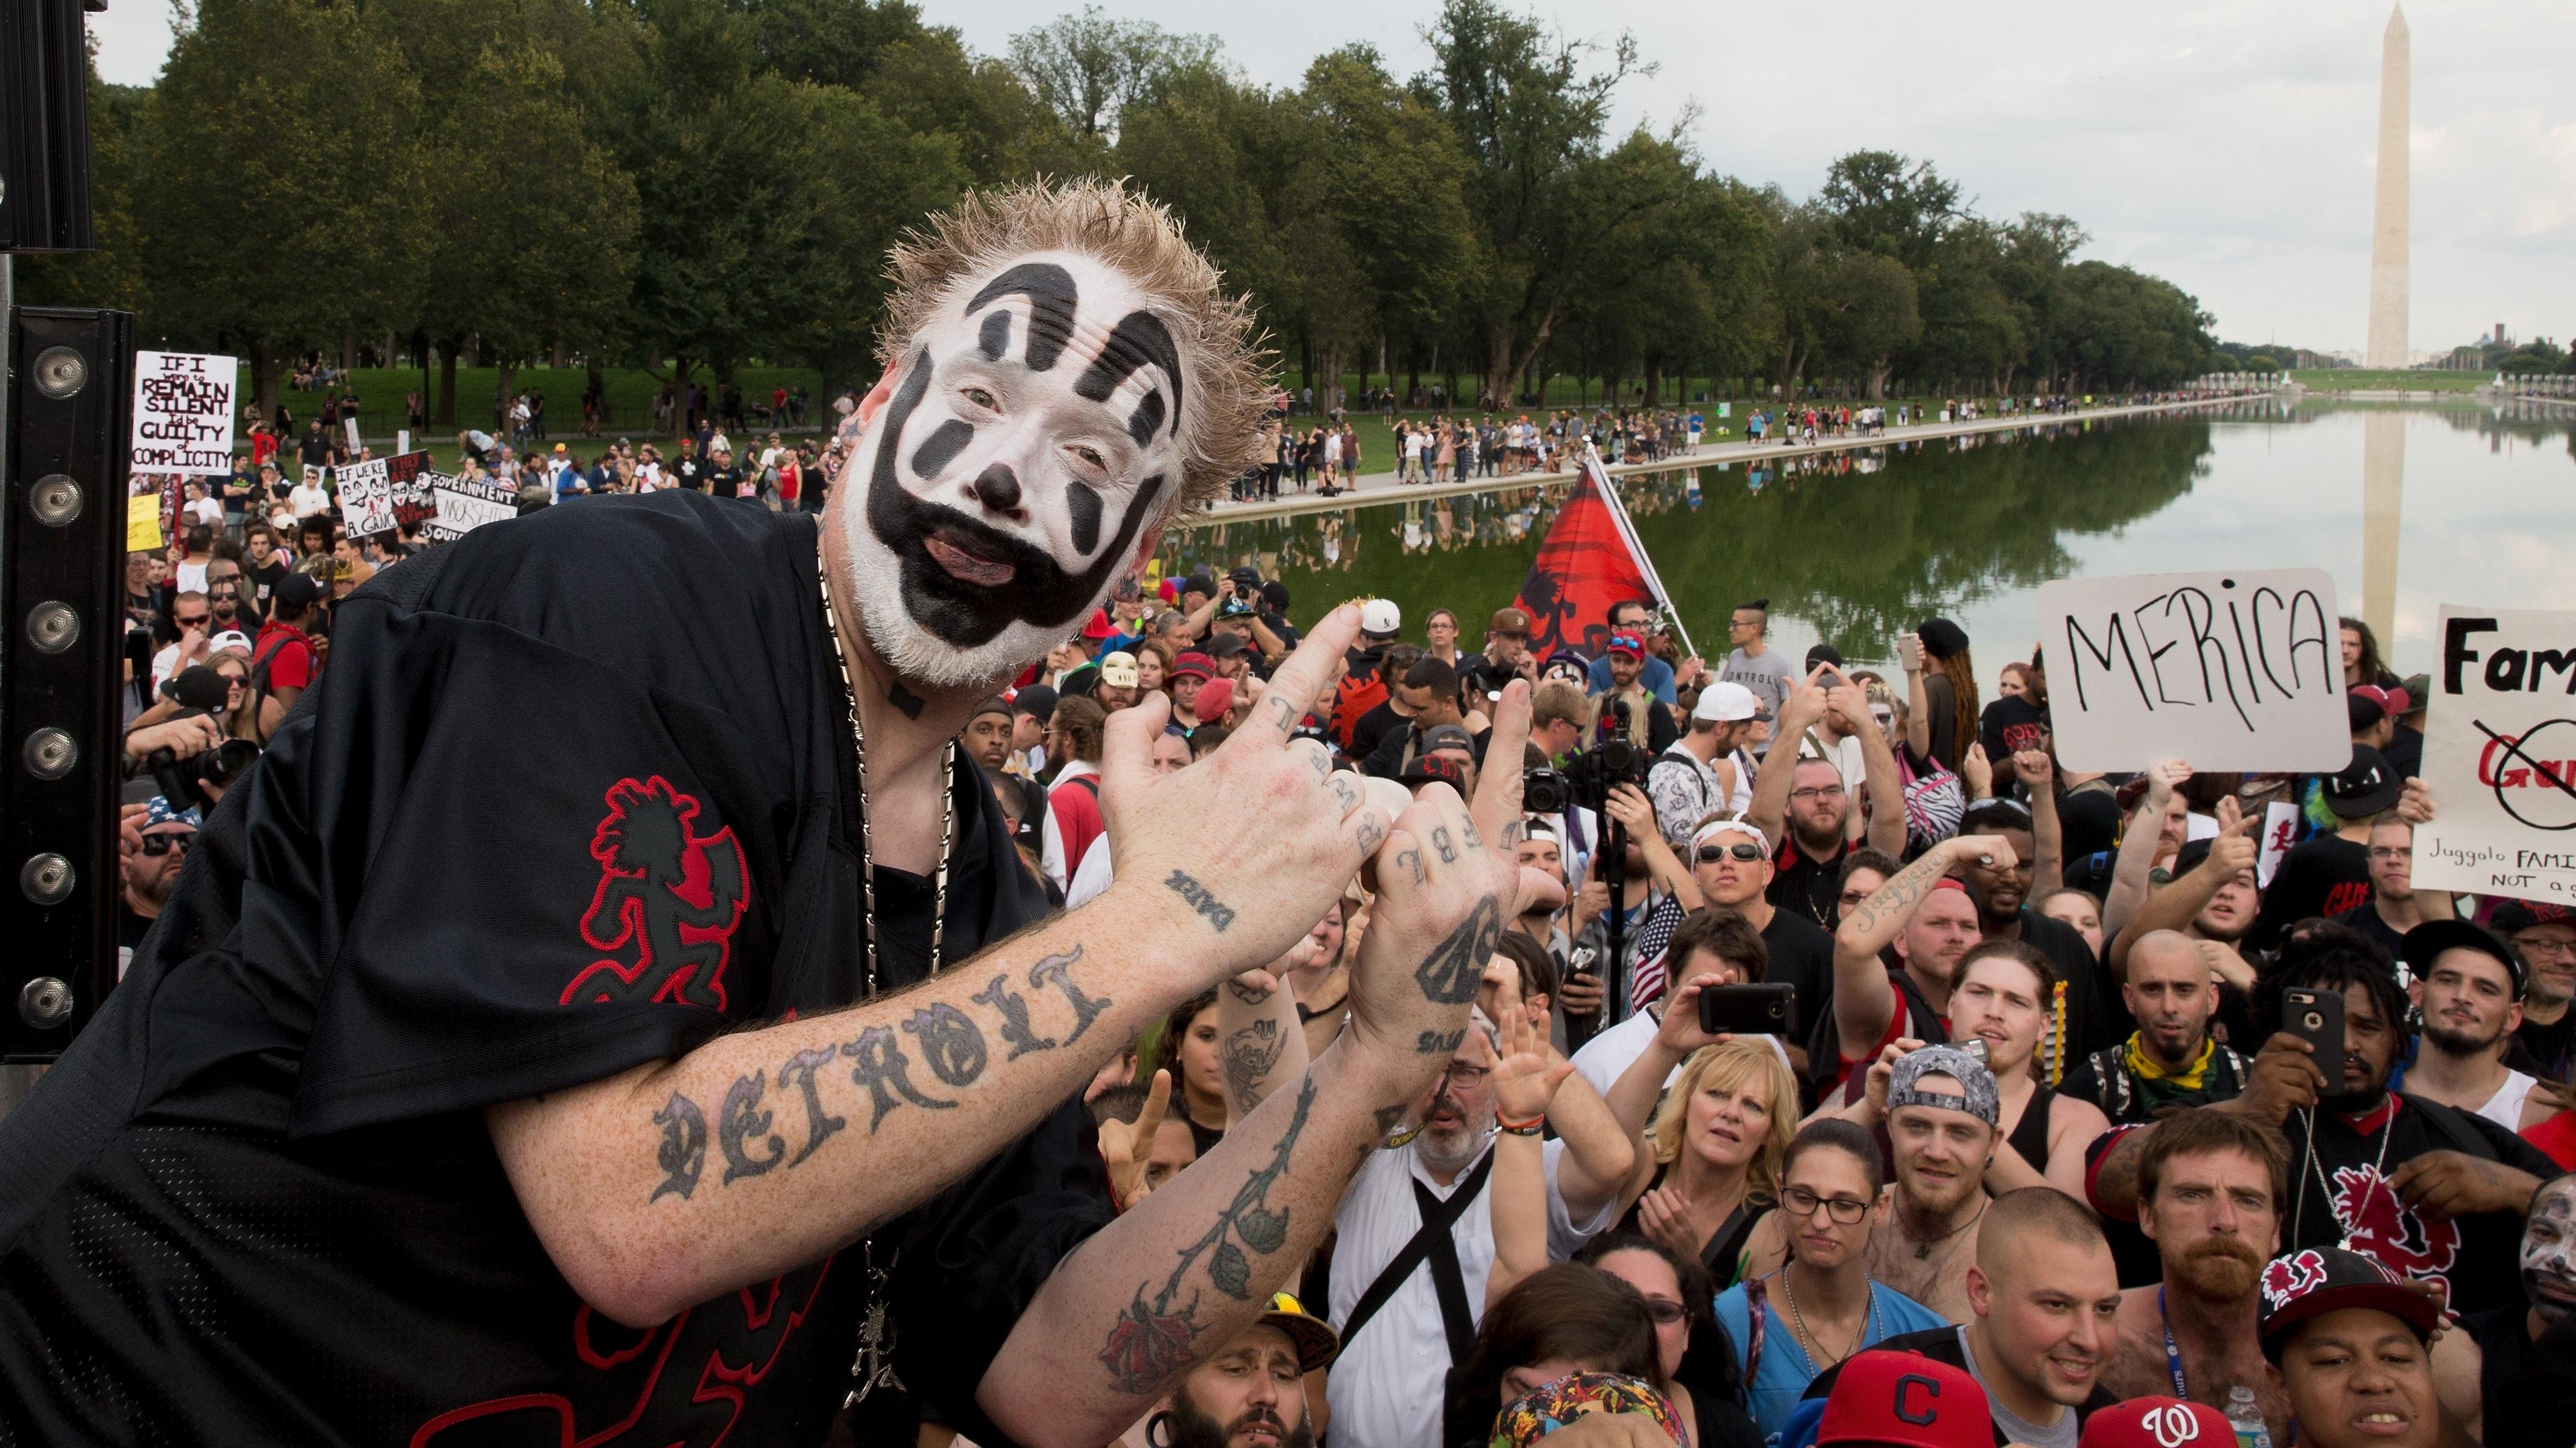 Insane Clown Posse’s Violent J reveals heart condition to fans, announces farewell tour